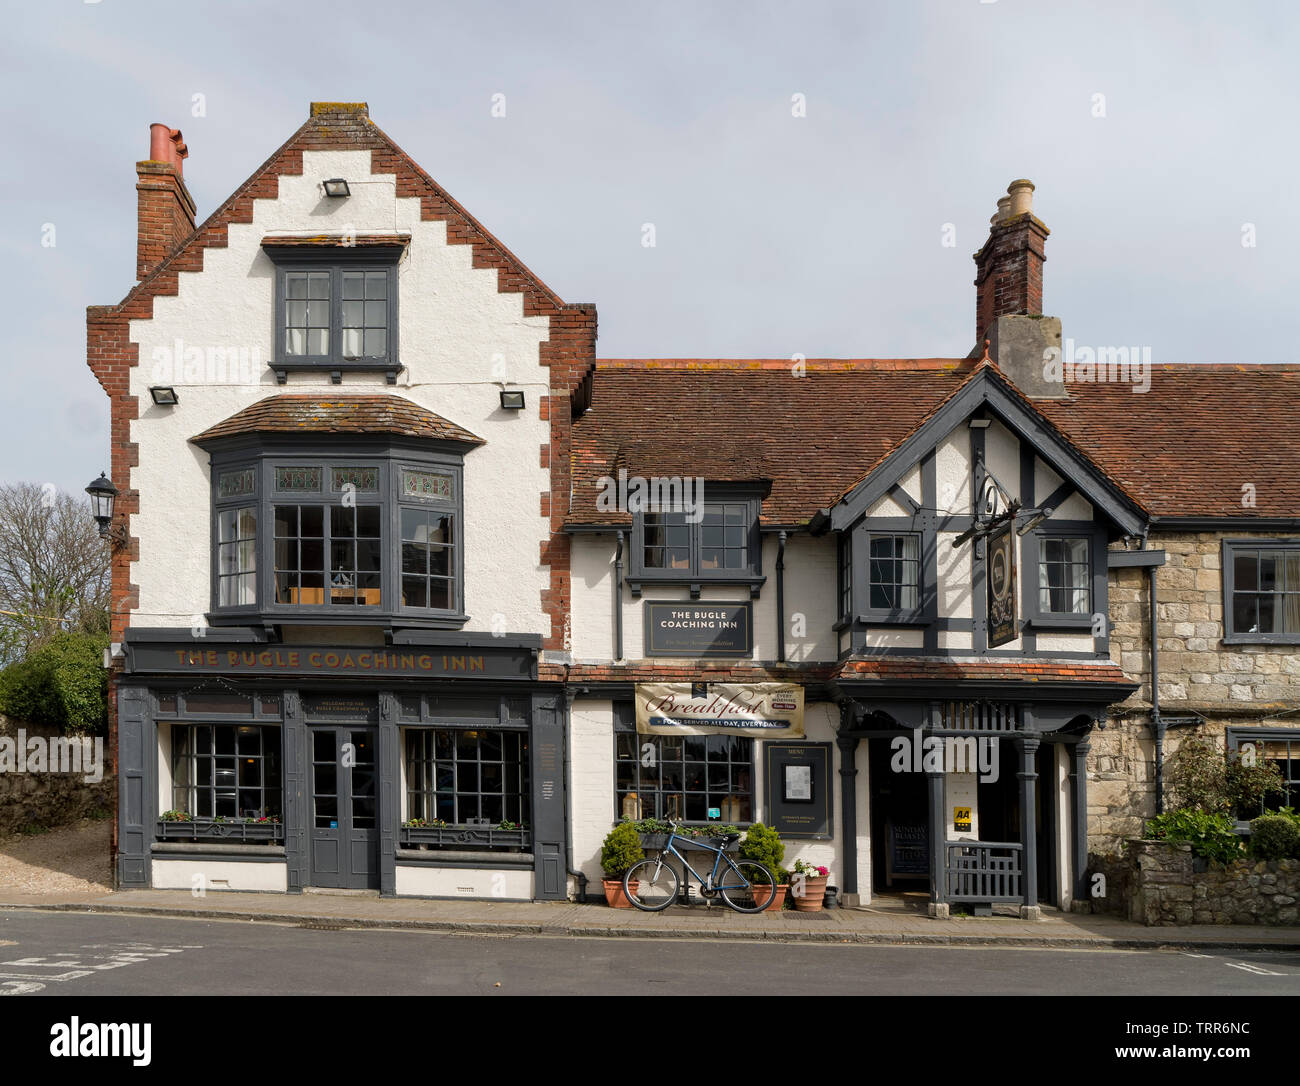 Die Bugle Coaching Inn einen traditionellen englischen Pub in Yarmouth auf der Isle of Wight Stockfoto